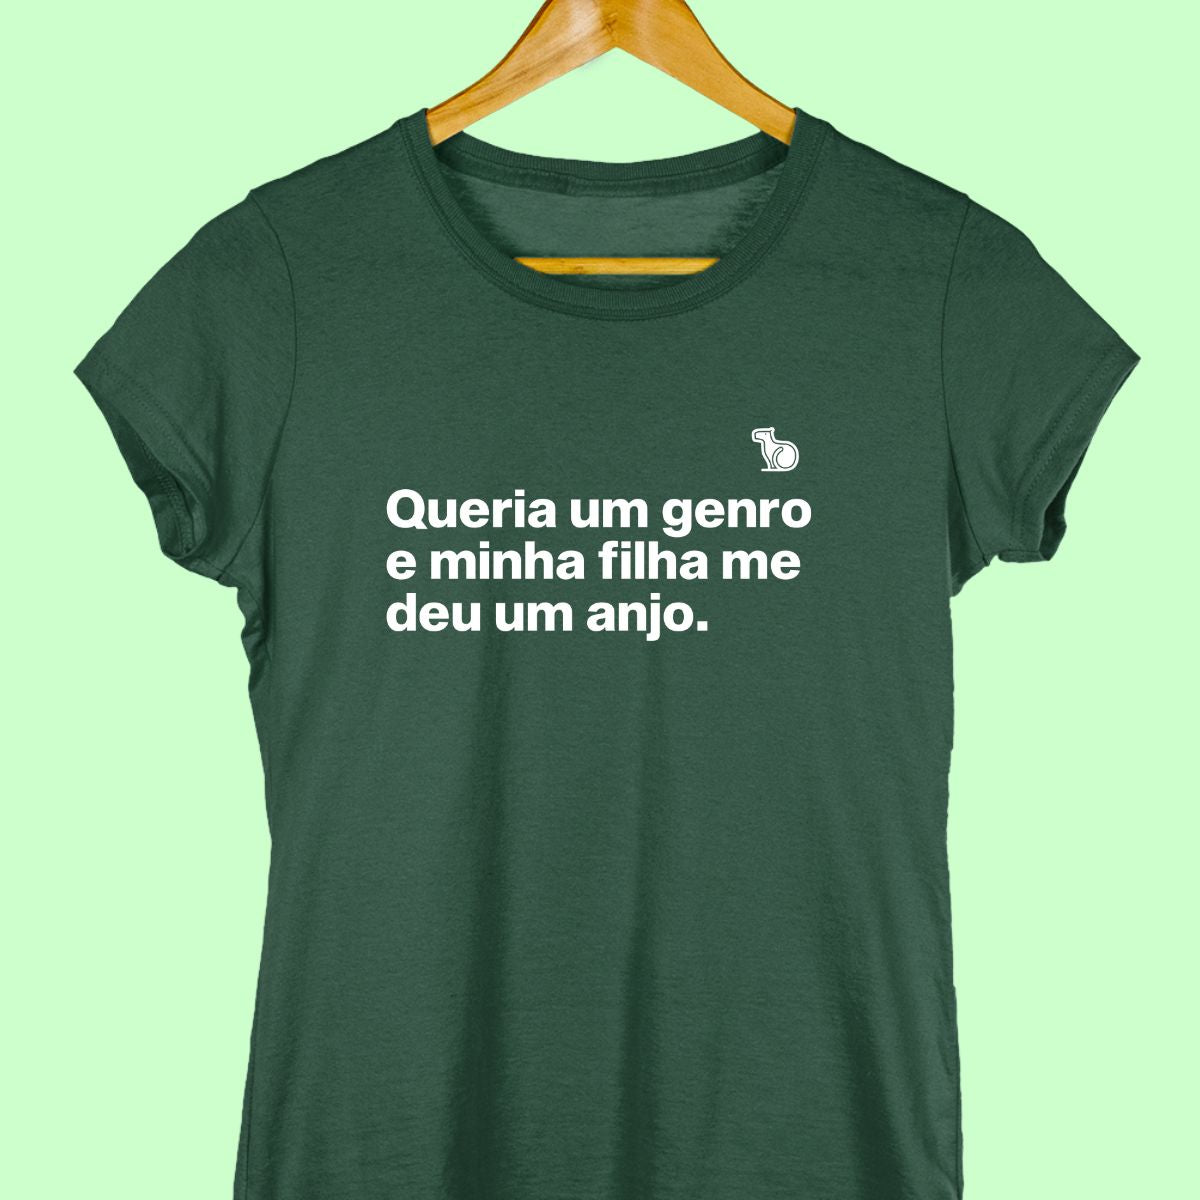 Camiseta com a frase "Queria um genro e minha filha me deu um anjo." feminina verde.